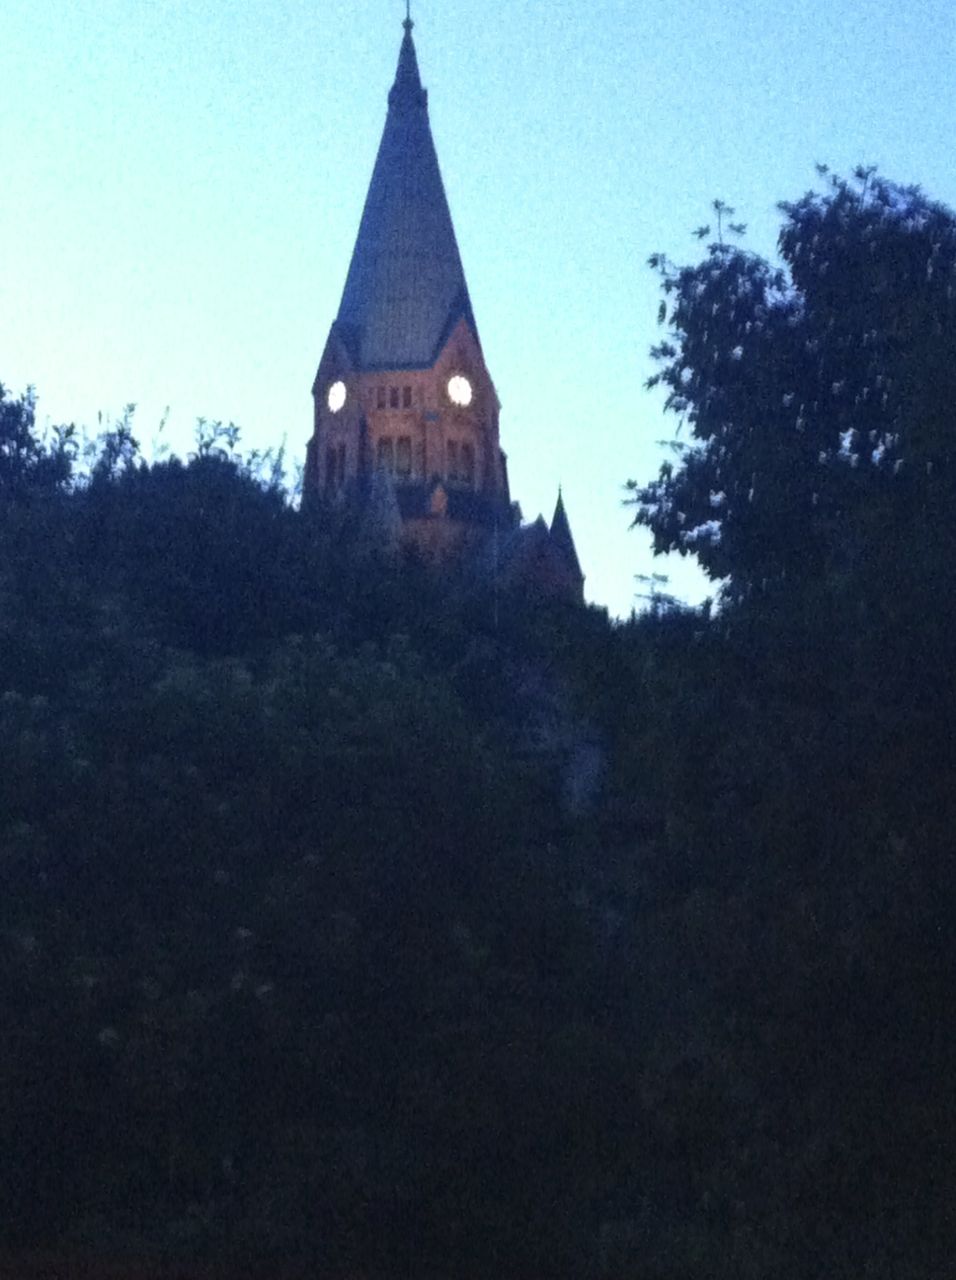 Sofia kyrka en julinatt